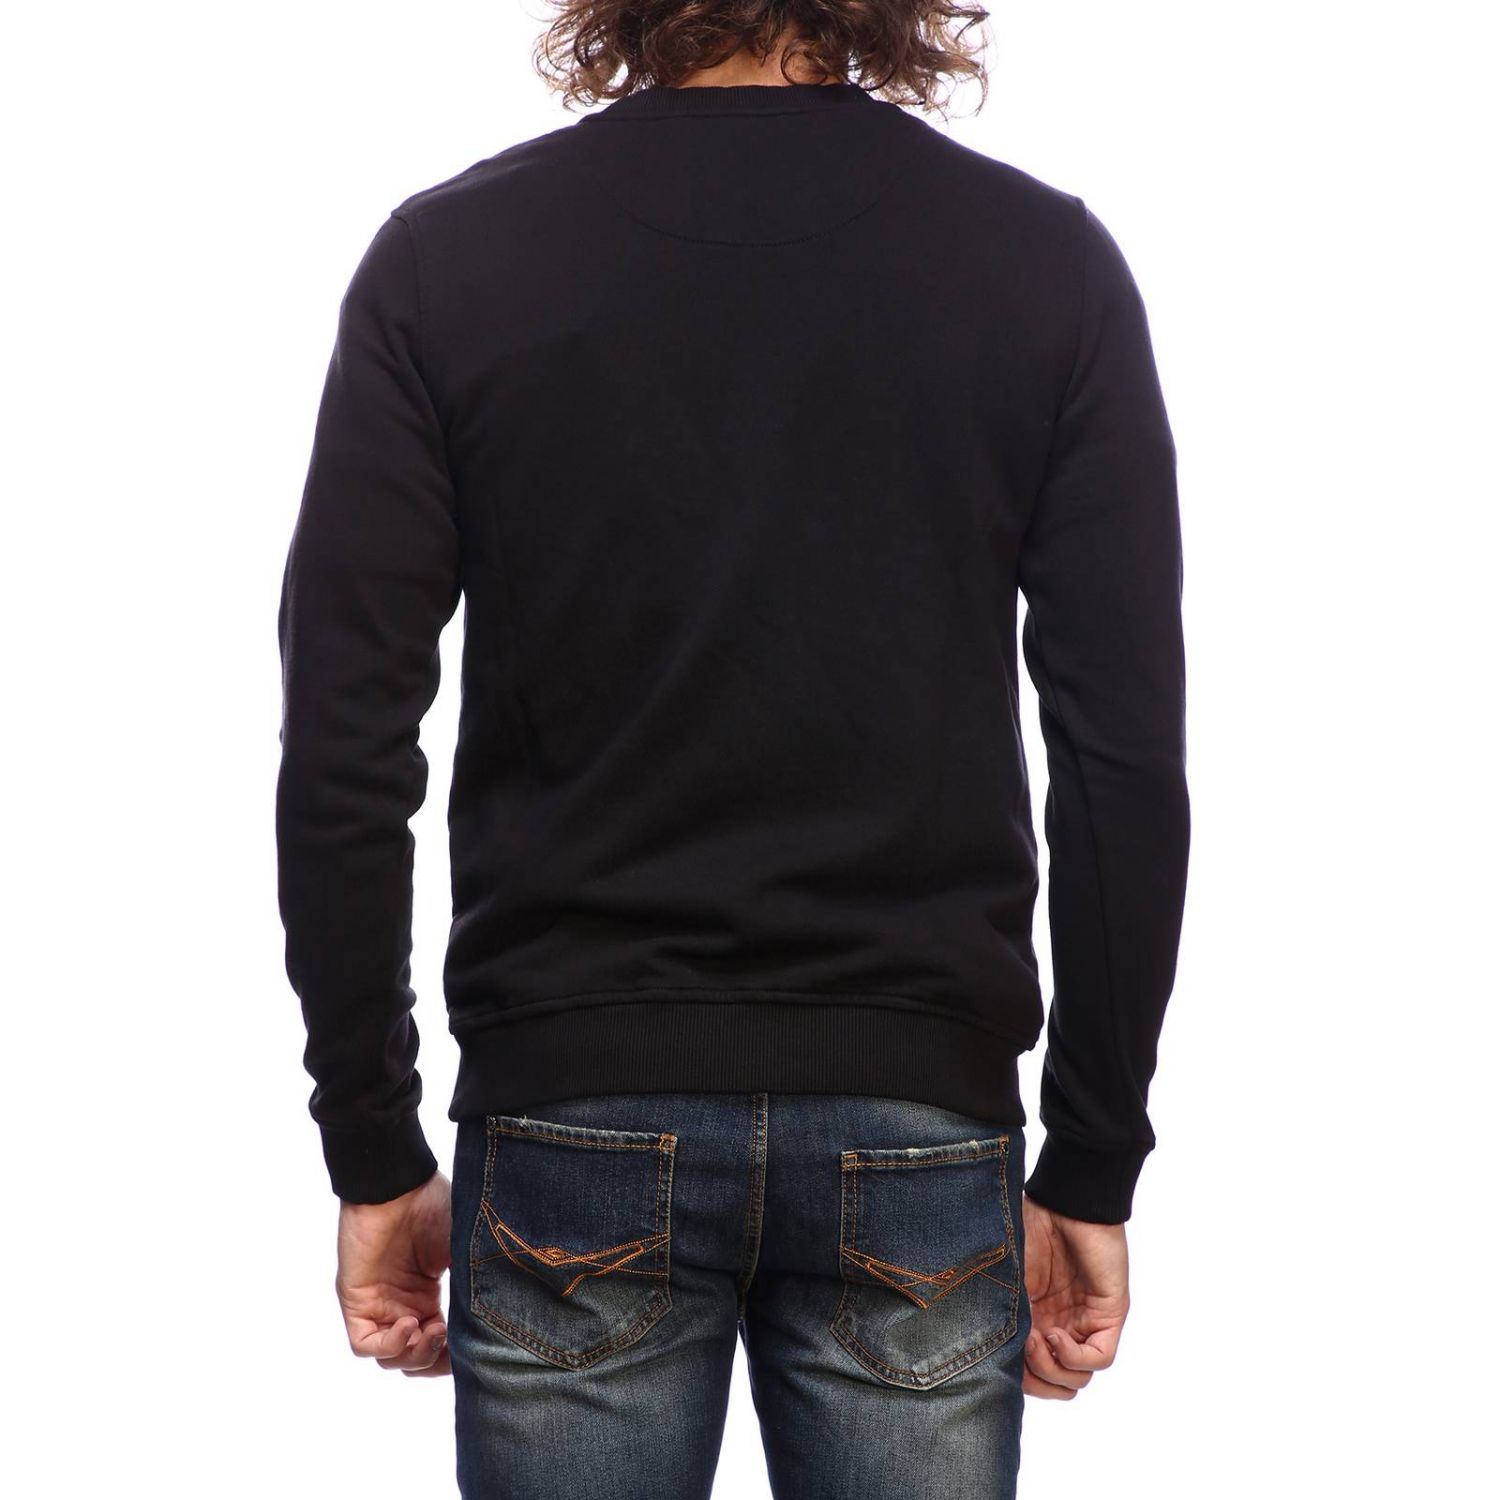 Frankie Morello Outlet: Sweater men - Black | Sweater Frankie Morello ...